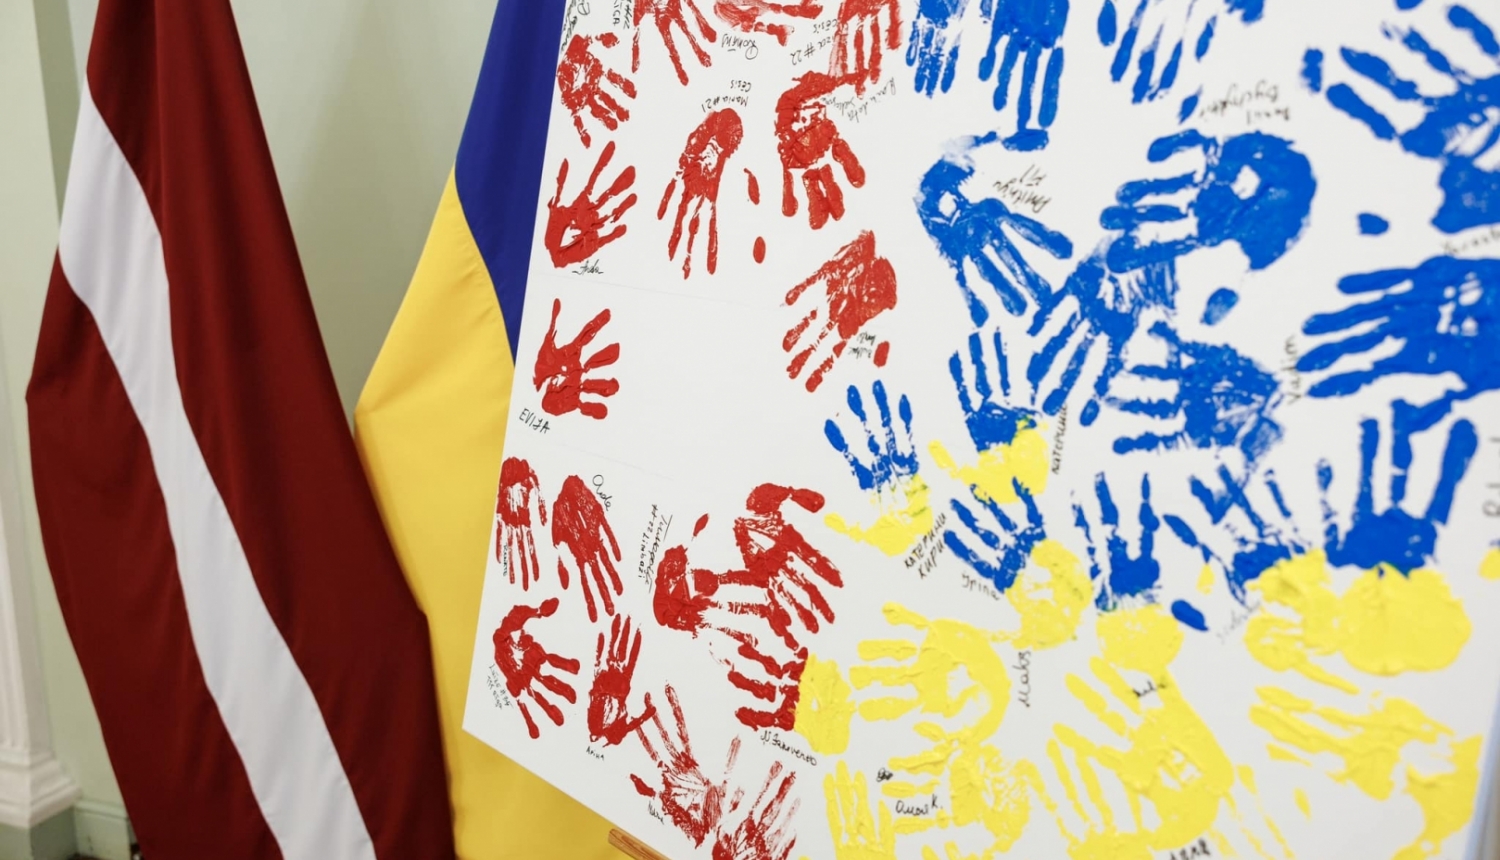 Latvijas un Ukrainas karogi, priekšplānās balts audekls ar krāsā iemērktiem rokas nospiedumiem sarkanā, zilā un dzeltenā krāsā